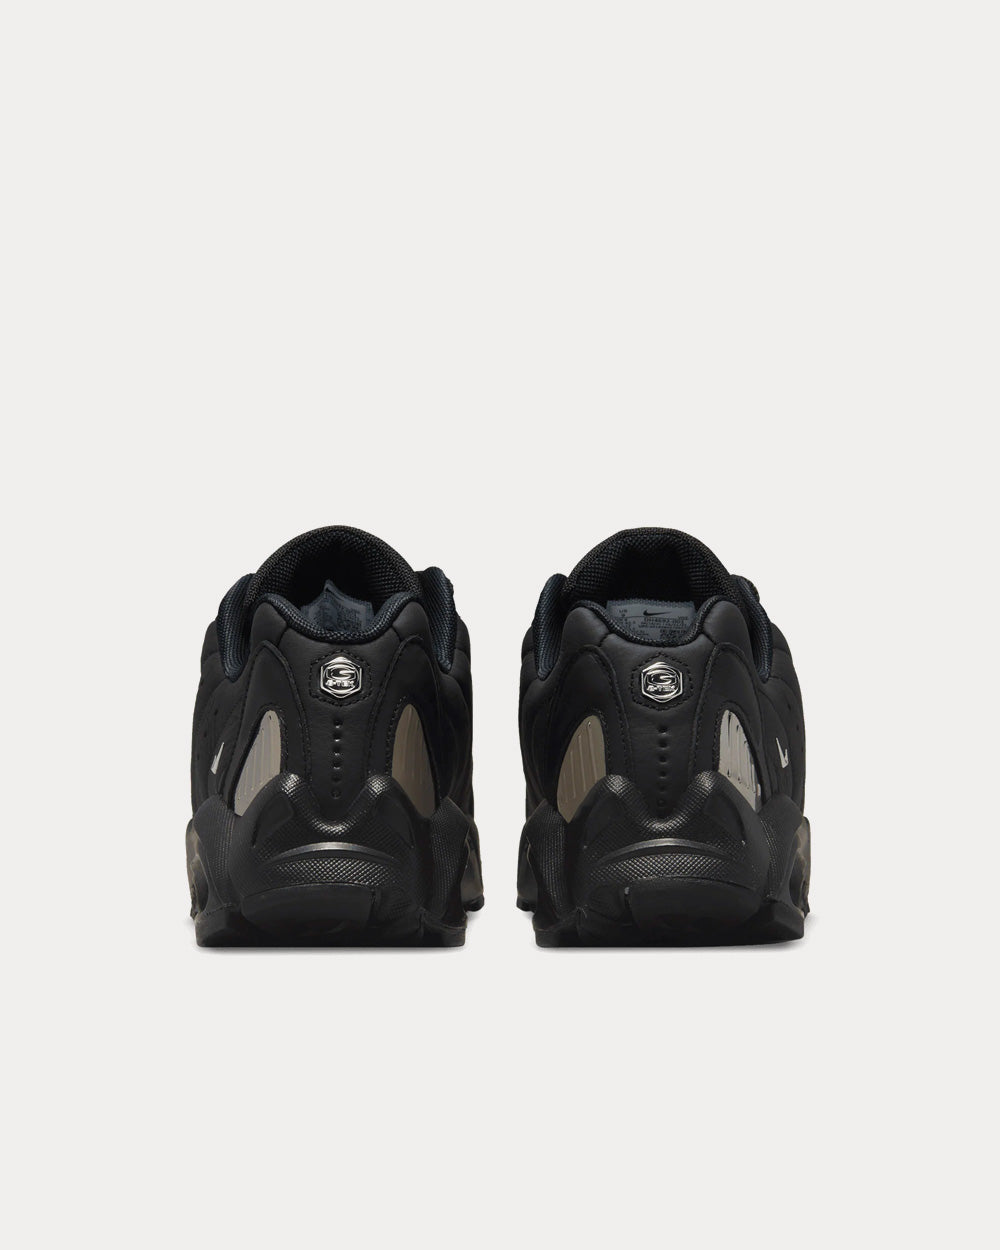 Nike x NOCTA - Hot Step Air Terra Black / Chrome / Cactus Low Top Sneakers